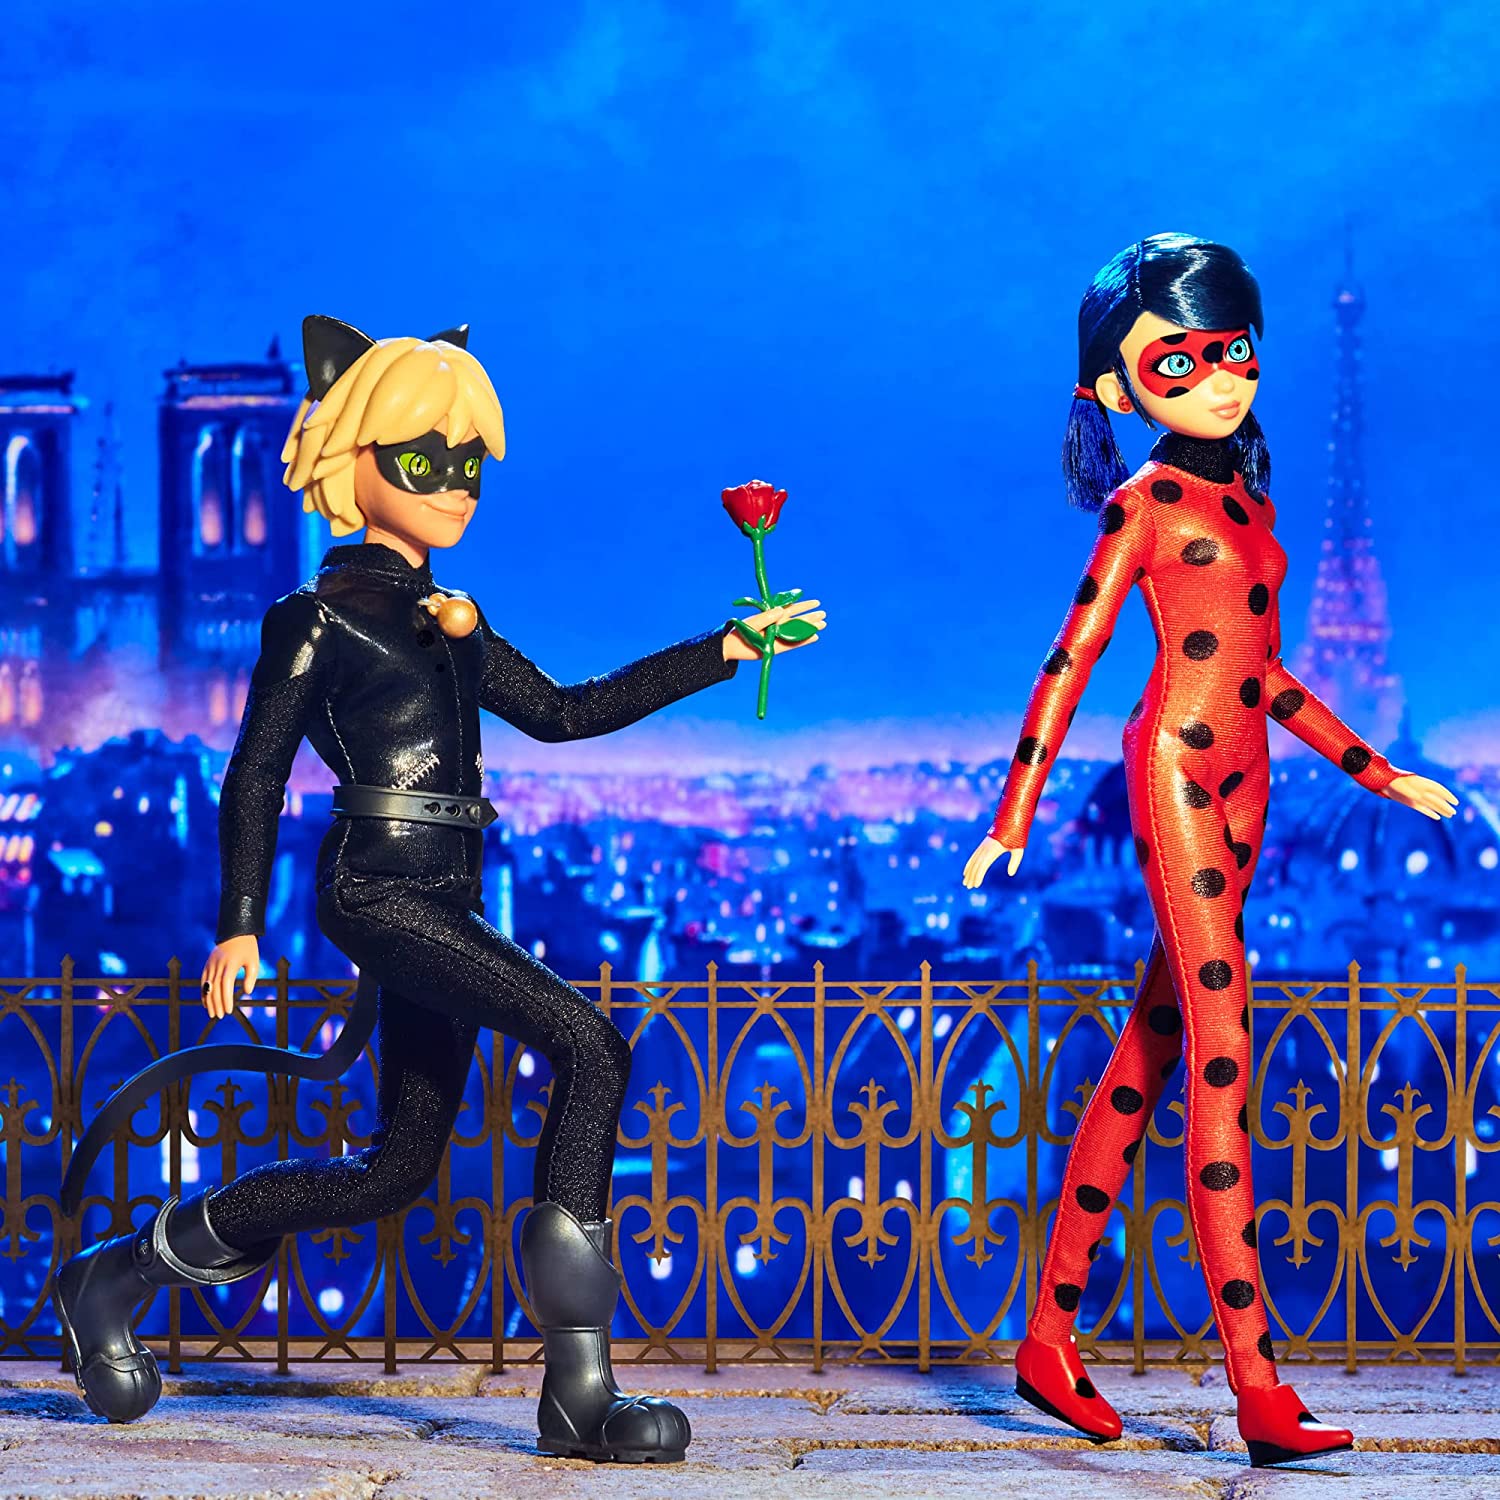  Bandai Miraculous Ladybug & Cat Noir The Movie Ladybug Fashion  Doll, 26cm Marinette Ladybug Doll with Yoyo Accessory